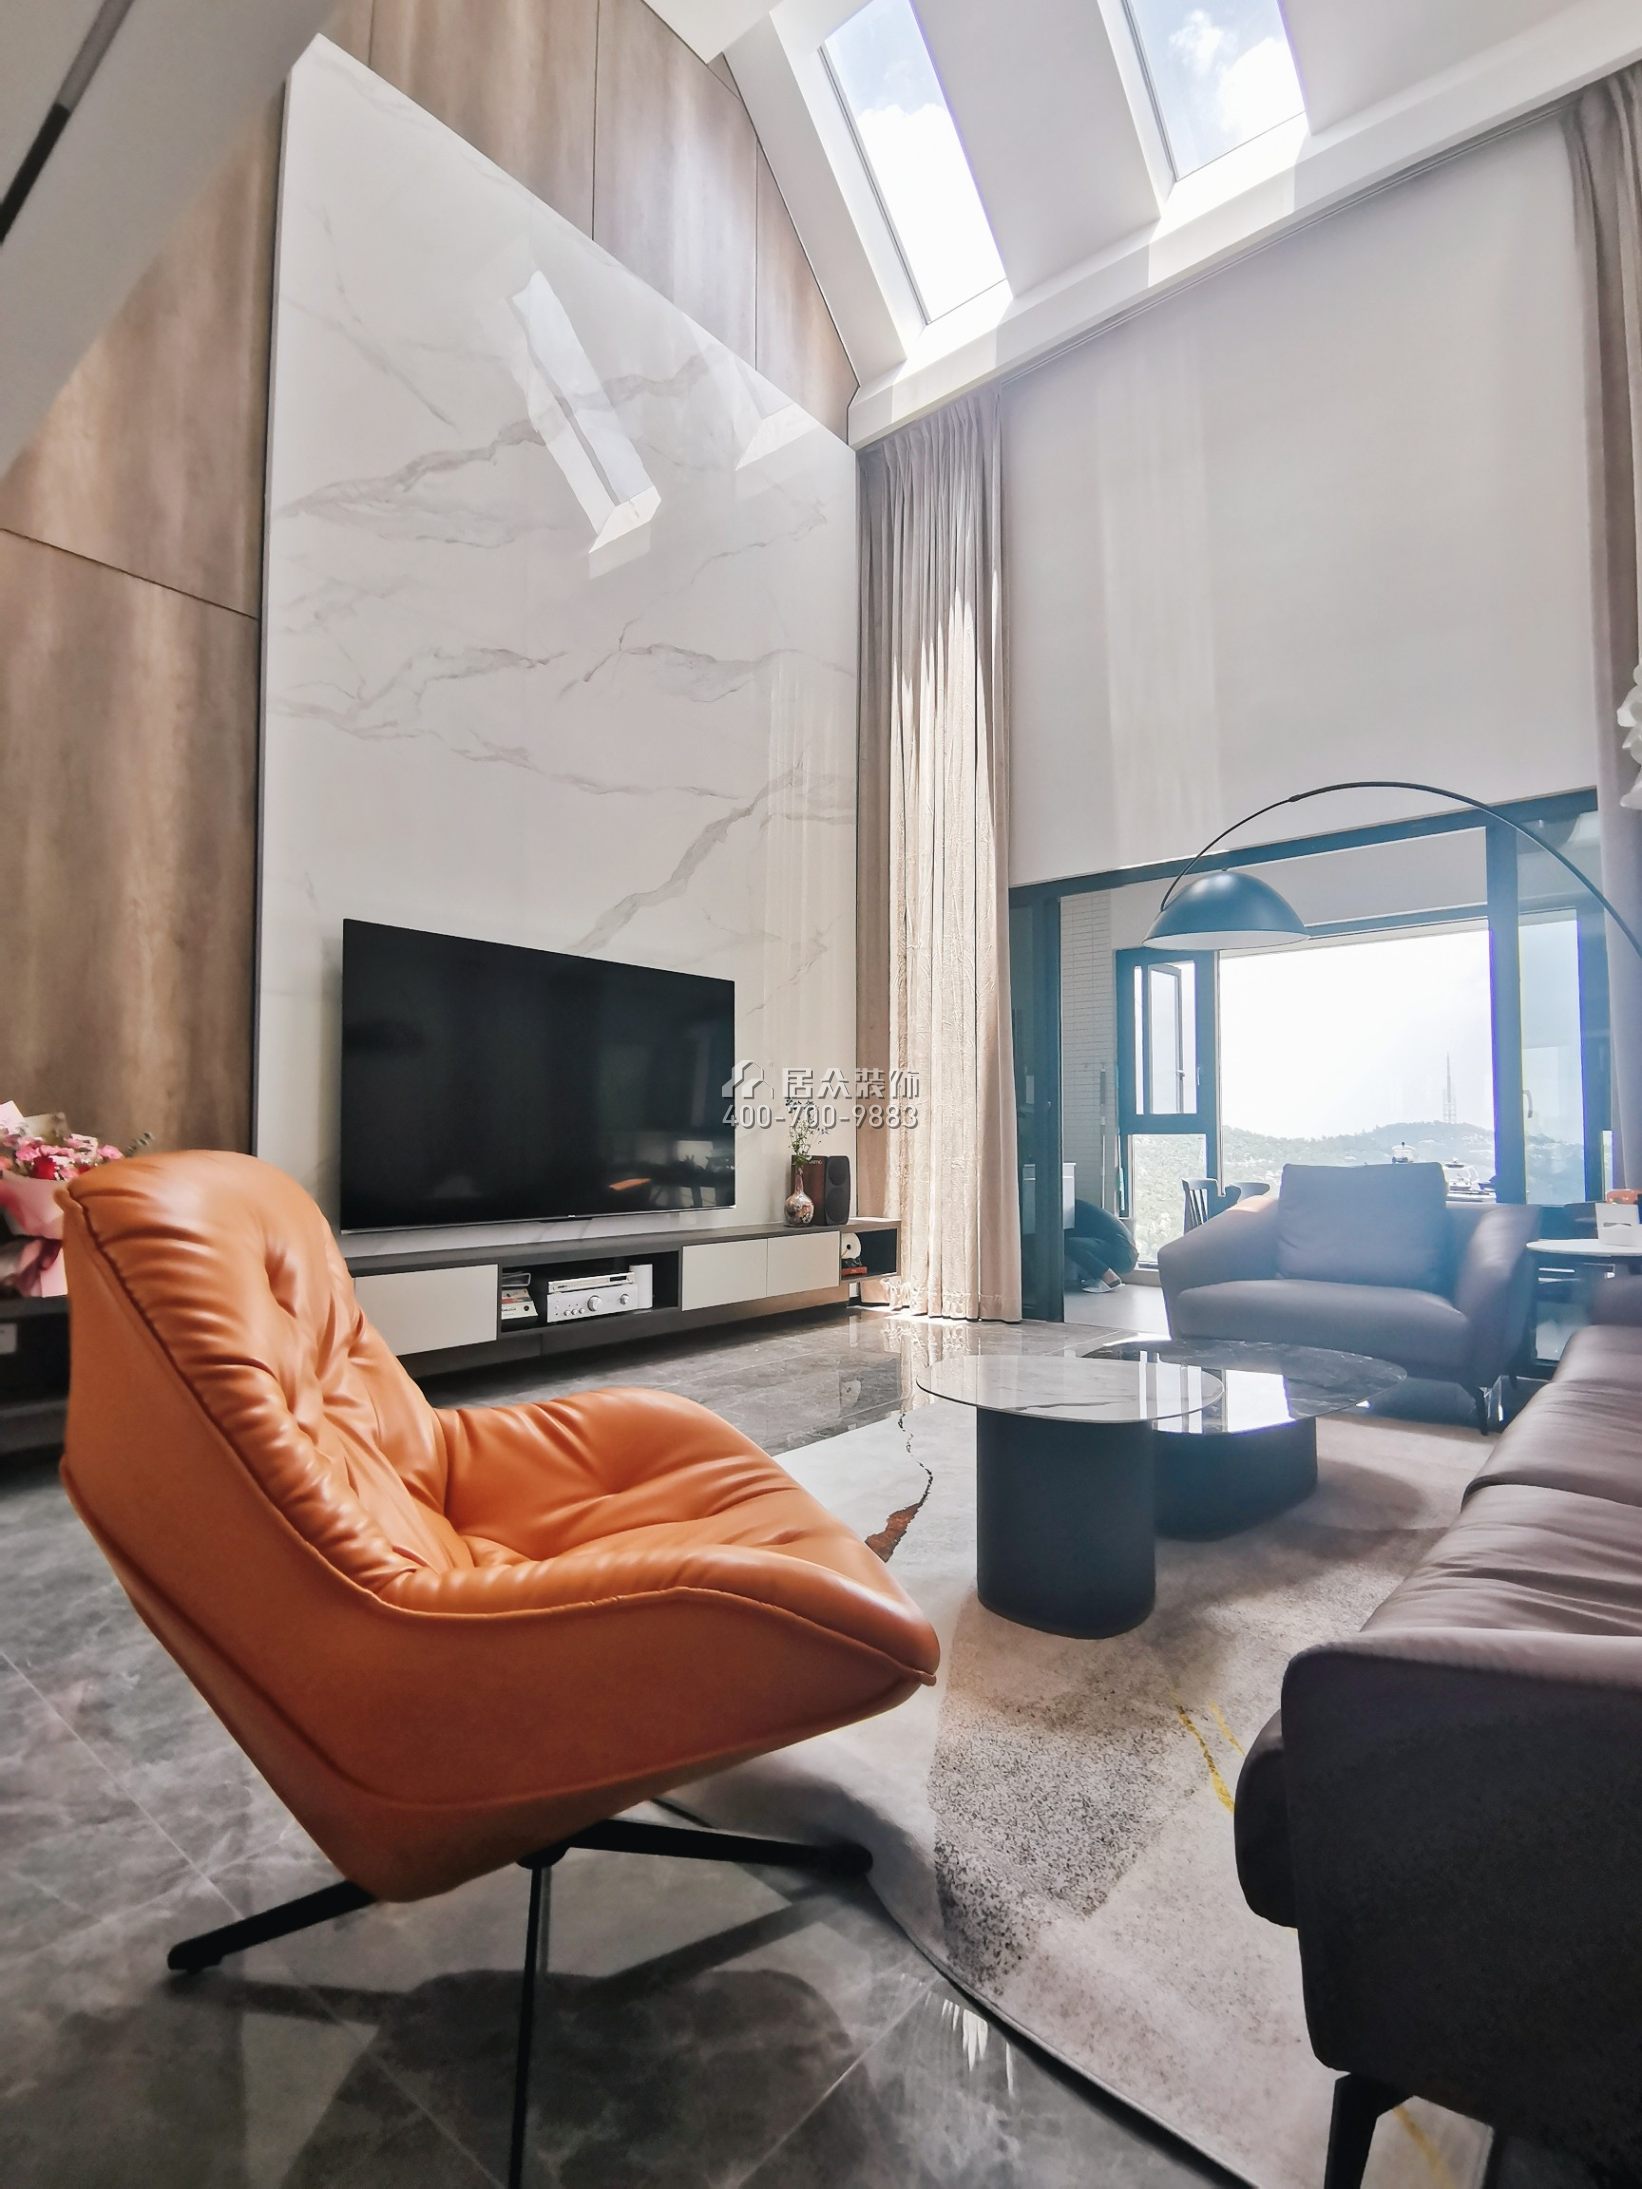 錦園170平方米現代簡約風格復式戶型客廳裝修效果圖